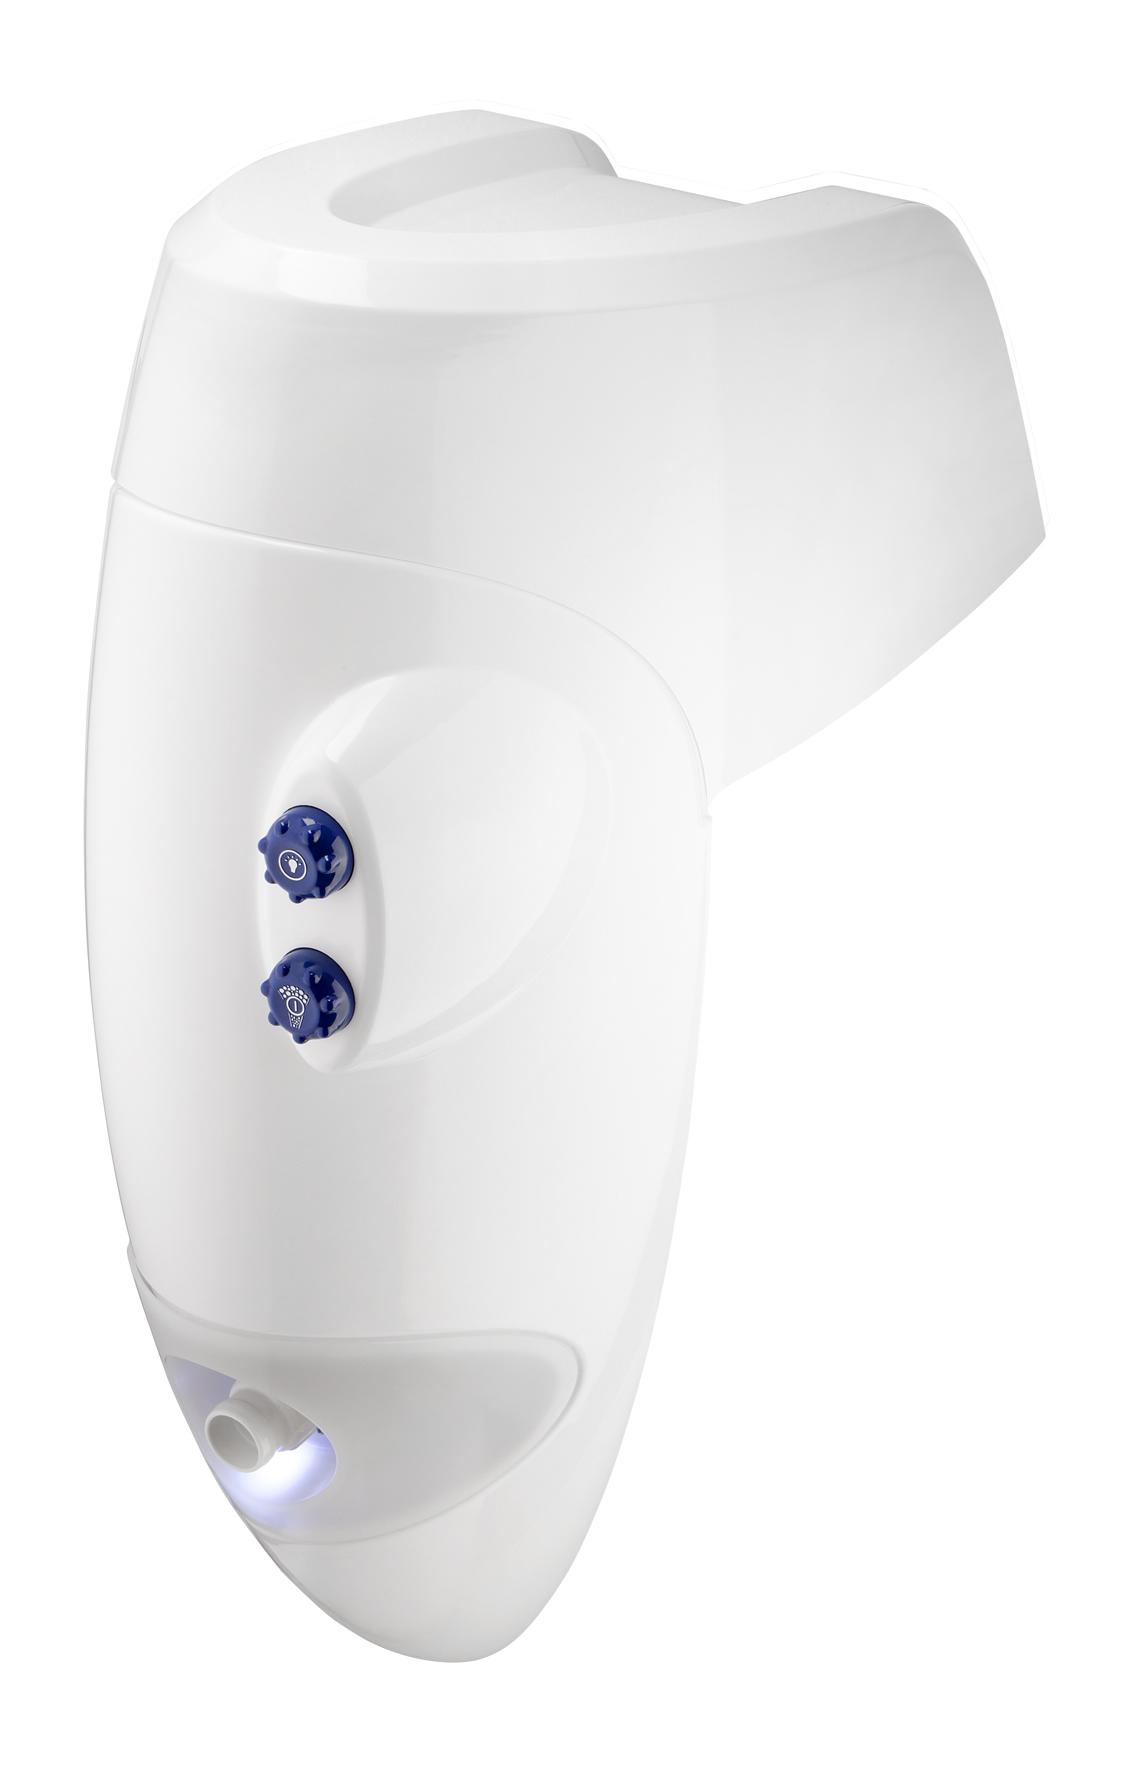 Einhänge-Gegenstromanlage Badu Jet Perla, LED Weiß, 400 V, 40m³/h